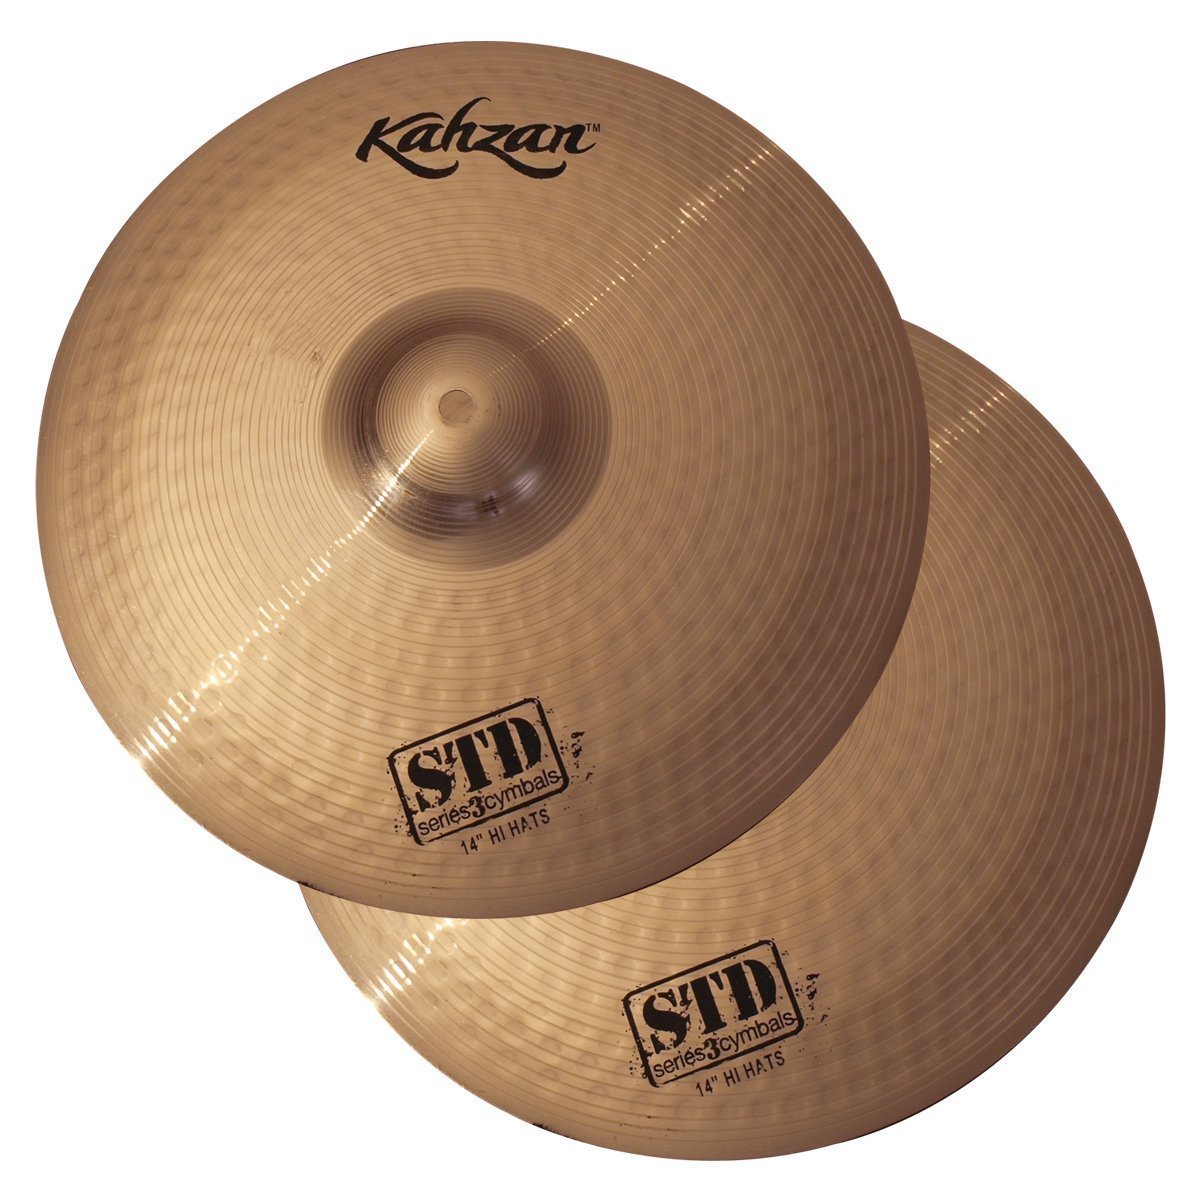 Kahzan 'STD-3 Series' Hi-Hat Cymbals (14")-KC-STD3-14HH